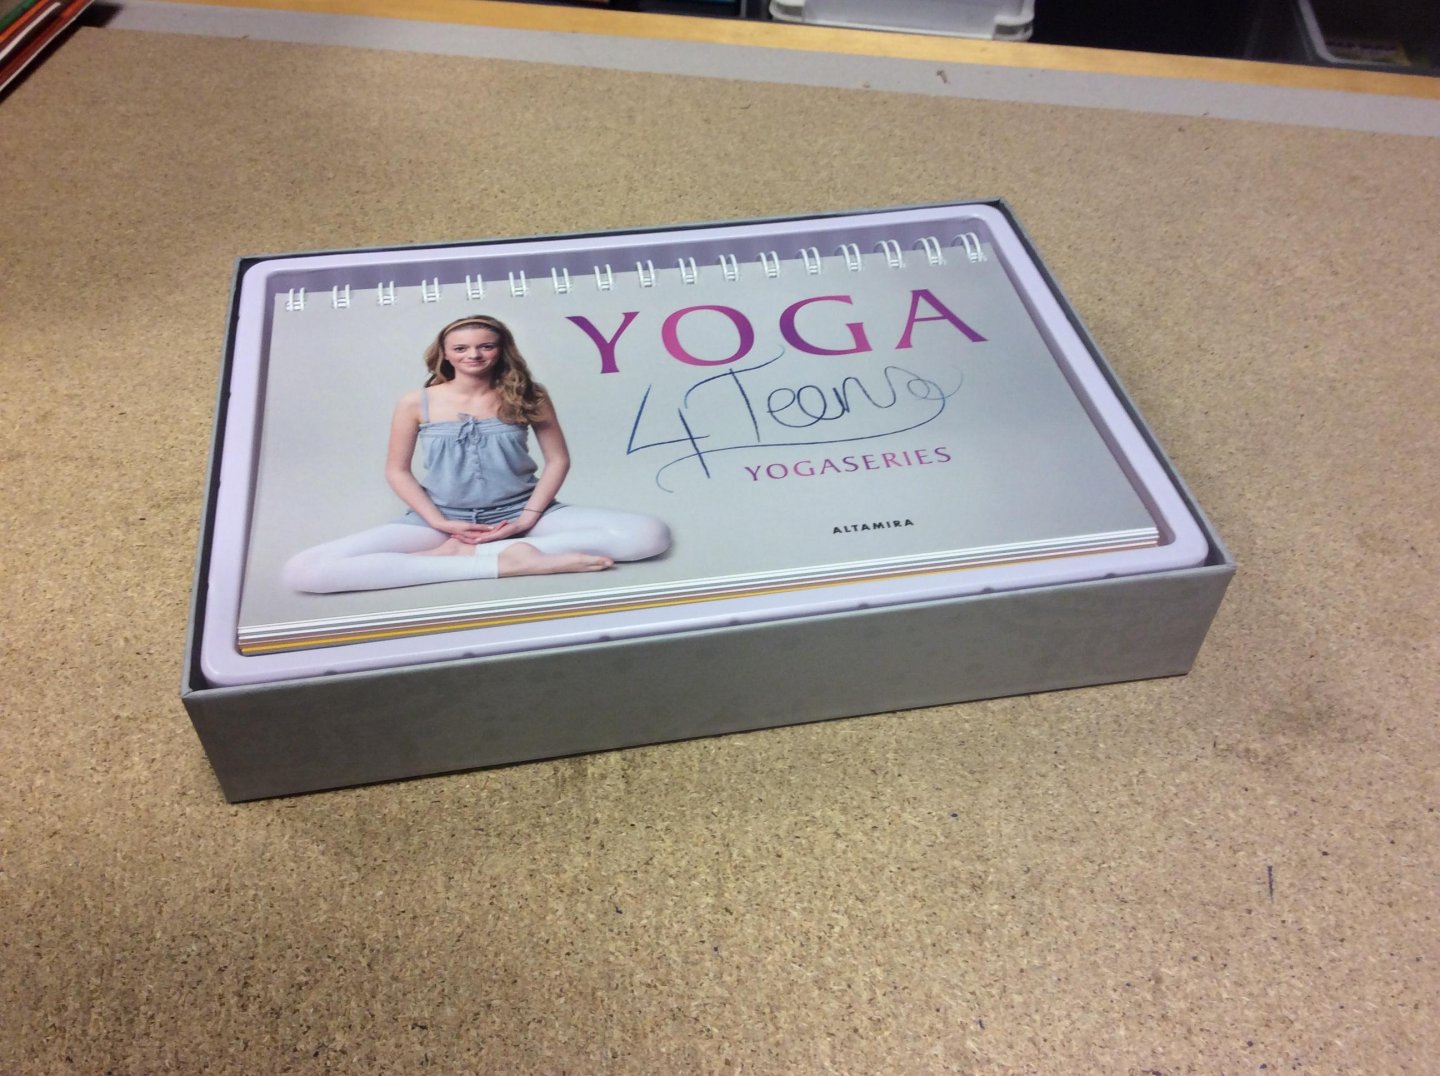 Weel, Rosalinda - Yoga4Teens. Relax en droom mee met 7 unieke yogaseries. Boek + kaartenset compleet